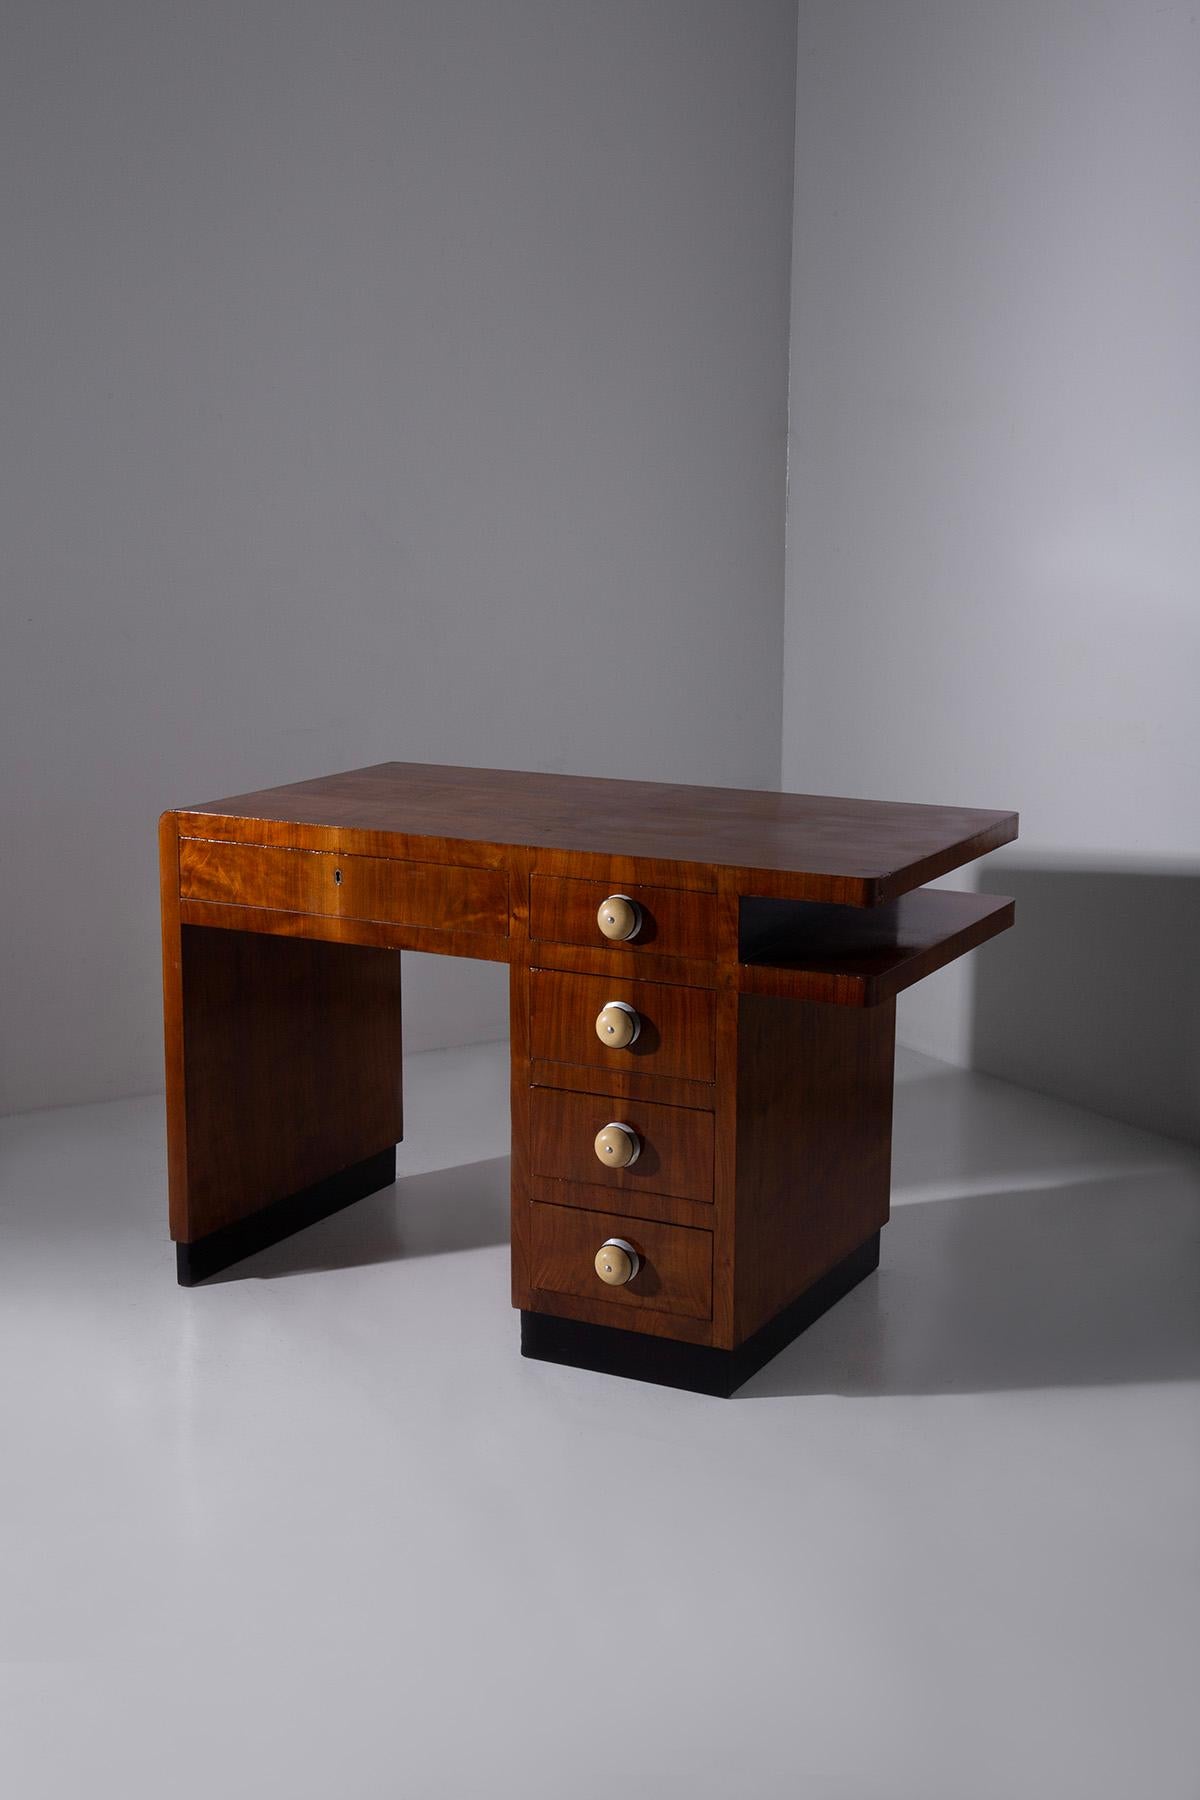 Hier ist ein Schreibtisch von zeitloser Eleganz, eine exquisite Kreation des italienischen Rationalismus. Dieser italienische Schreibtisch wurde mit äußerster Präzision gefertigt und verbindet die Wärme des Holzes mit dem eleganten Charme des